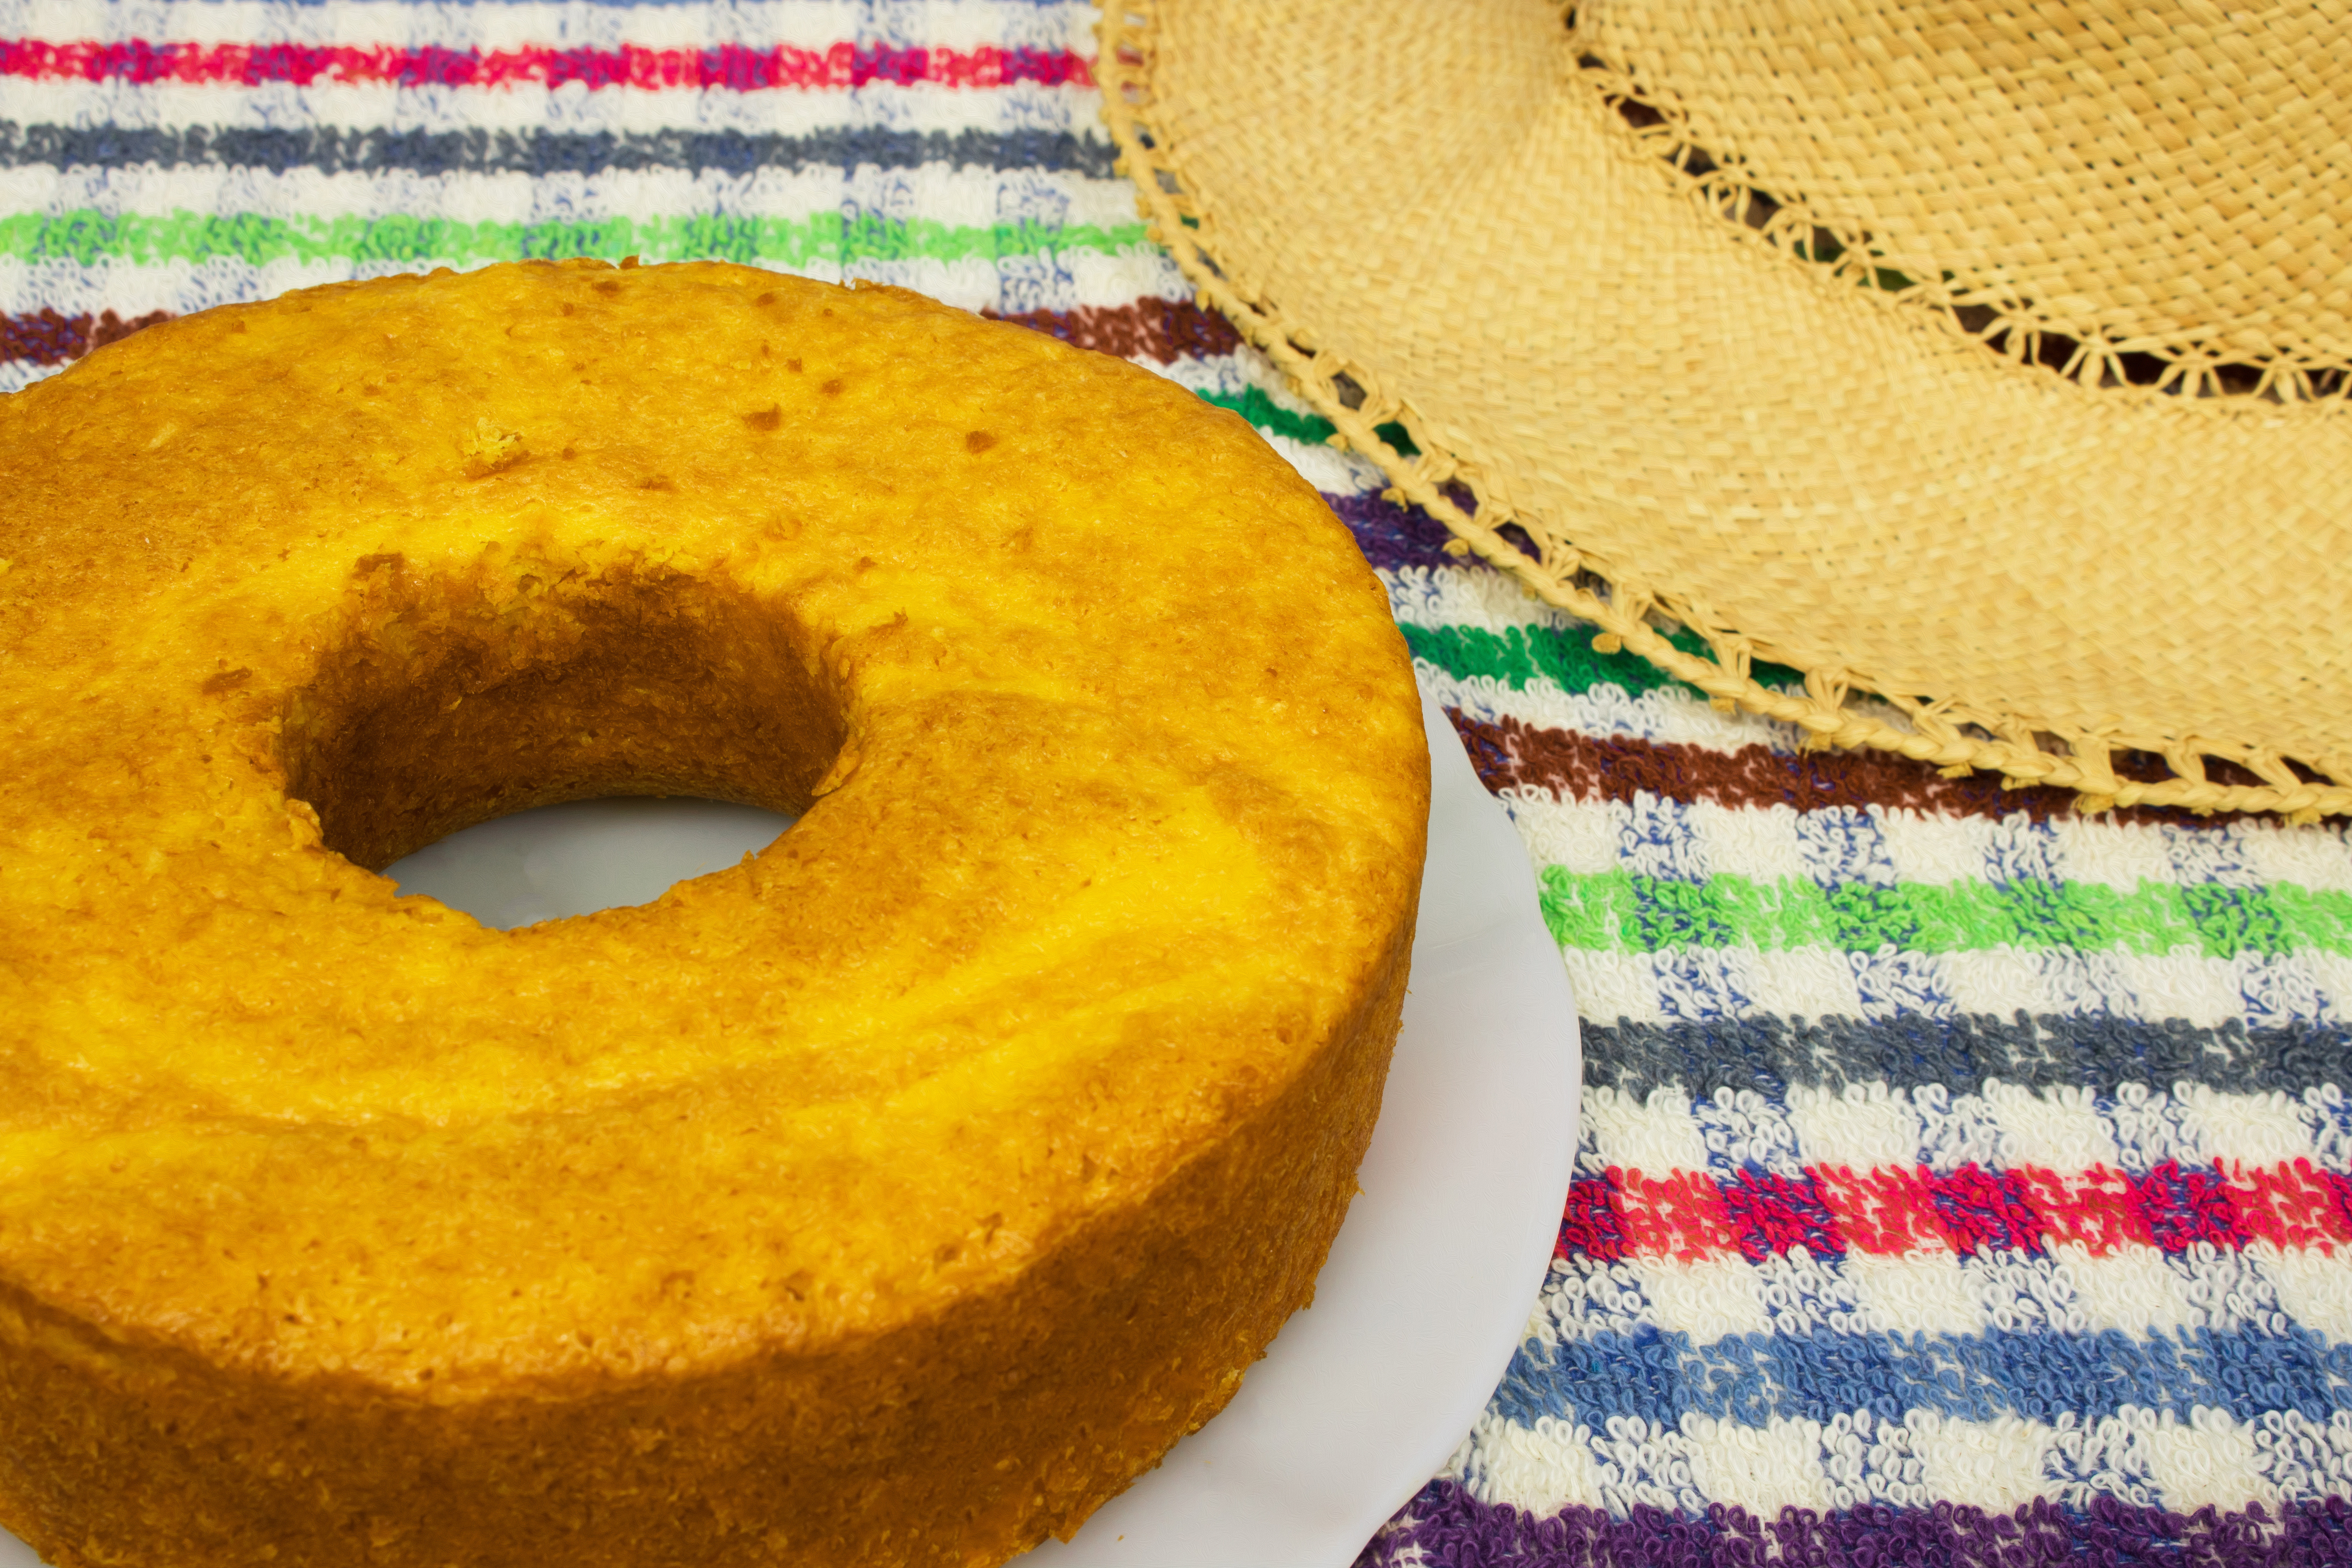 São João: receita de bolo de milho barata e simples para fazer em casa